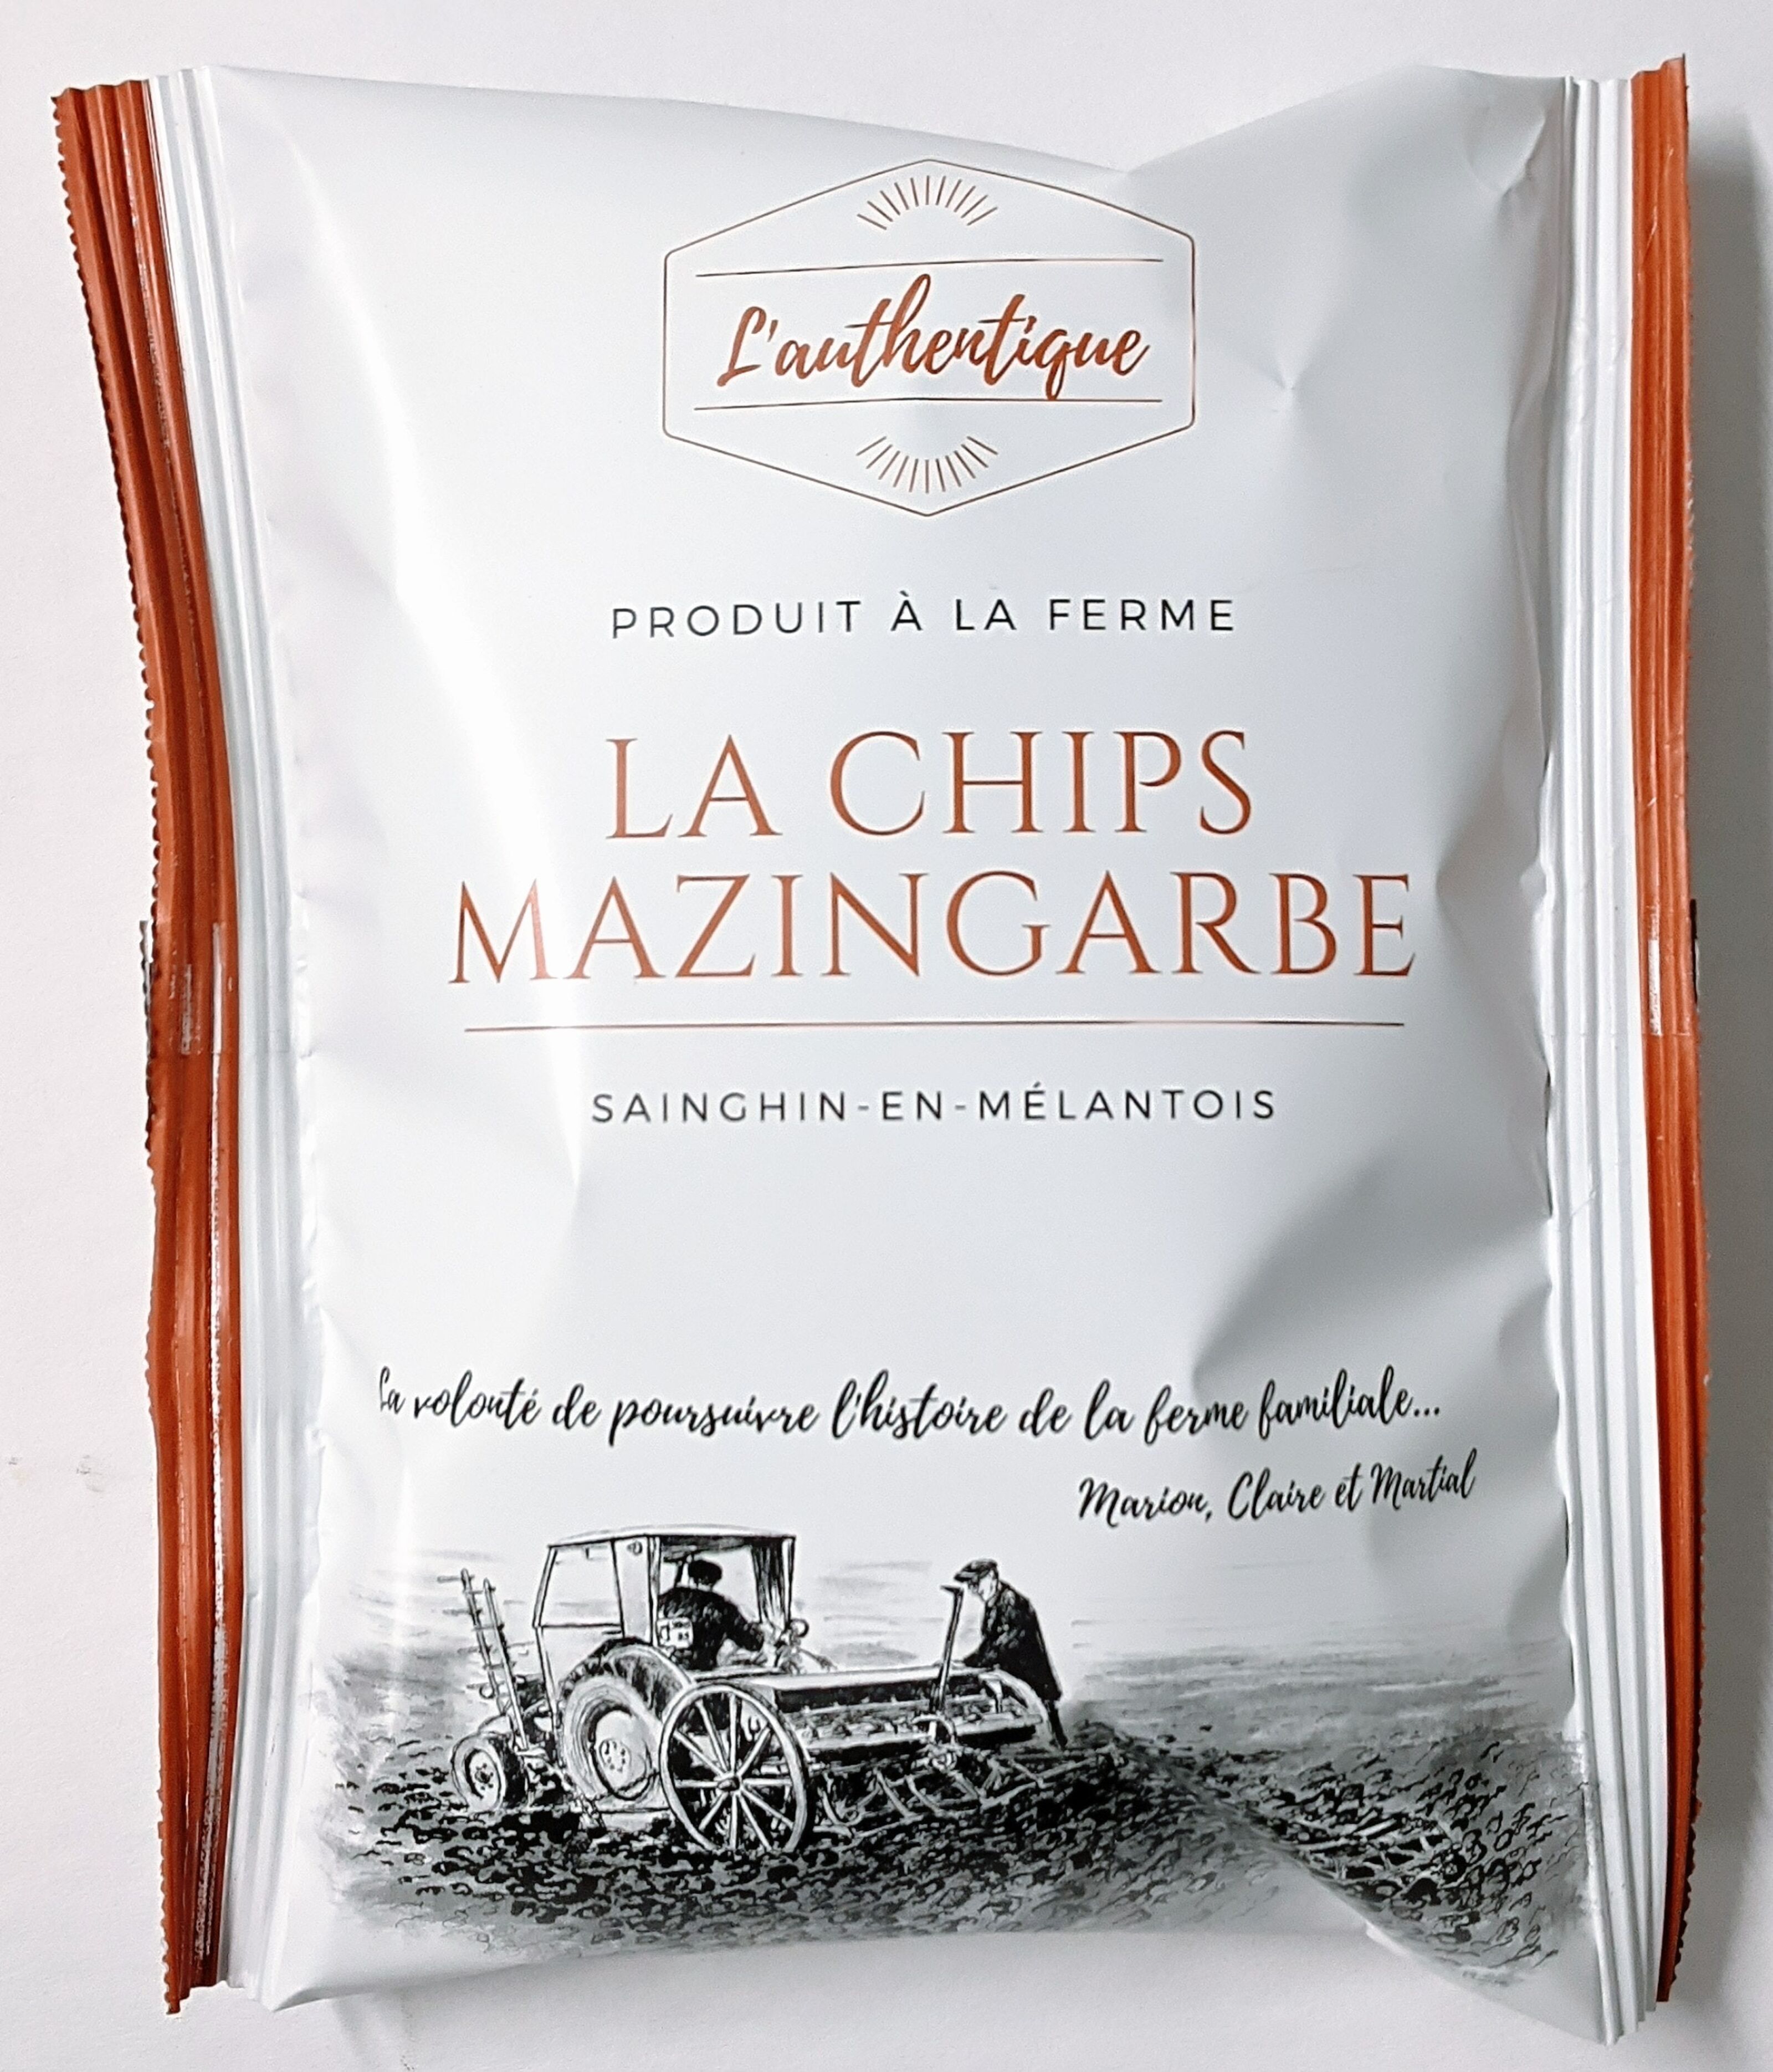 Achat La Chips Mazingarbe format individuel- Chips fermière - L'authentique  en gros